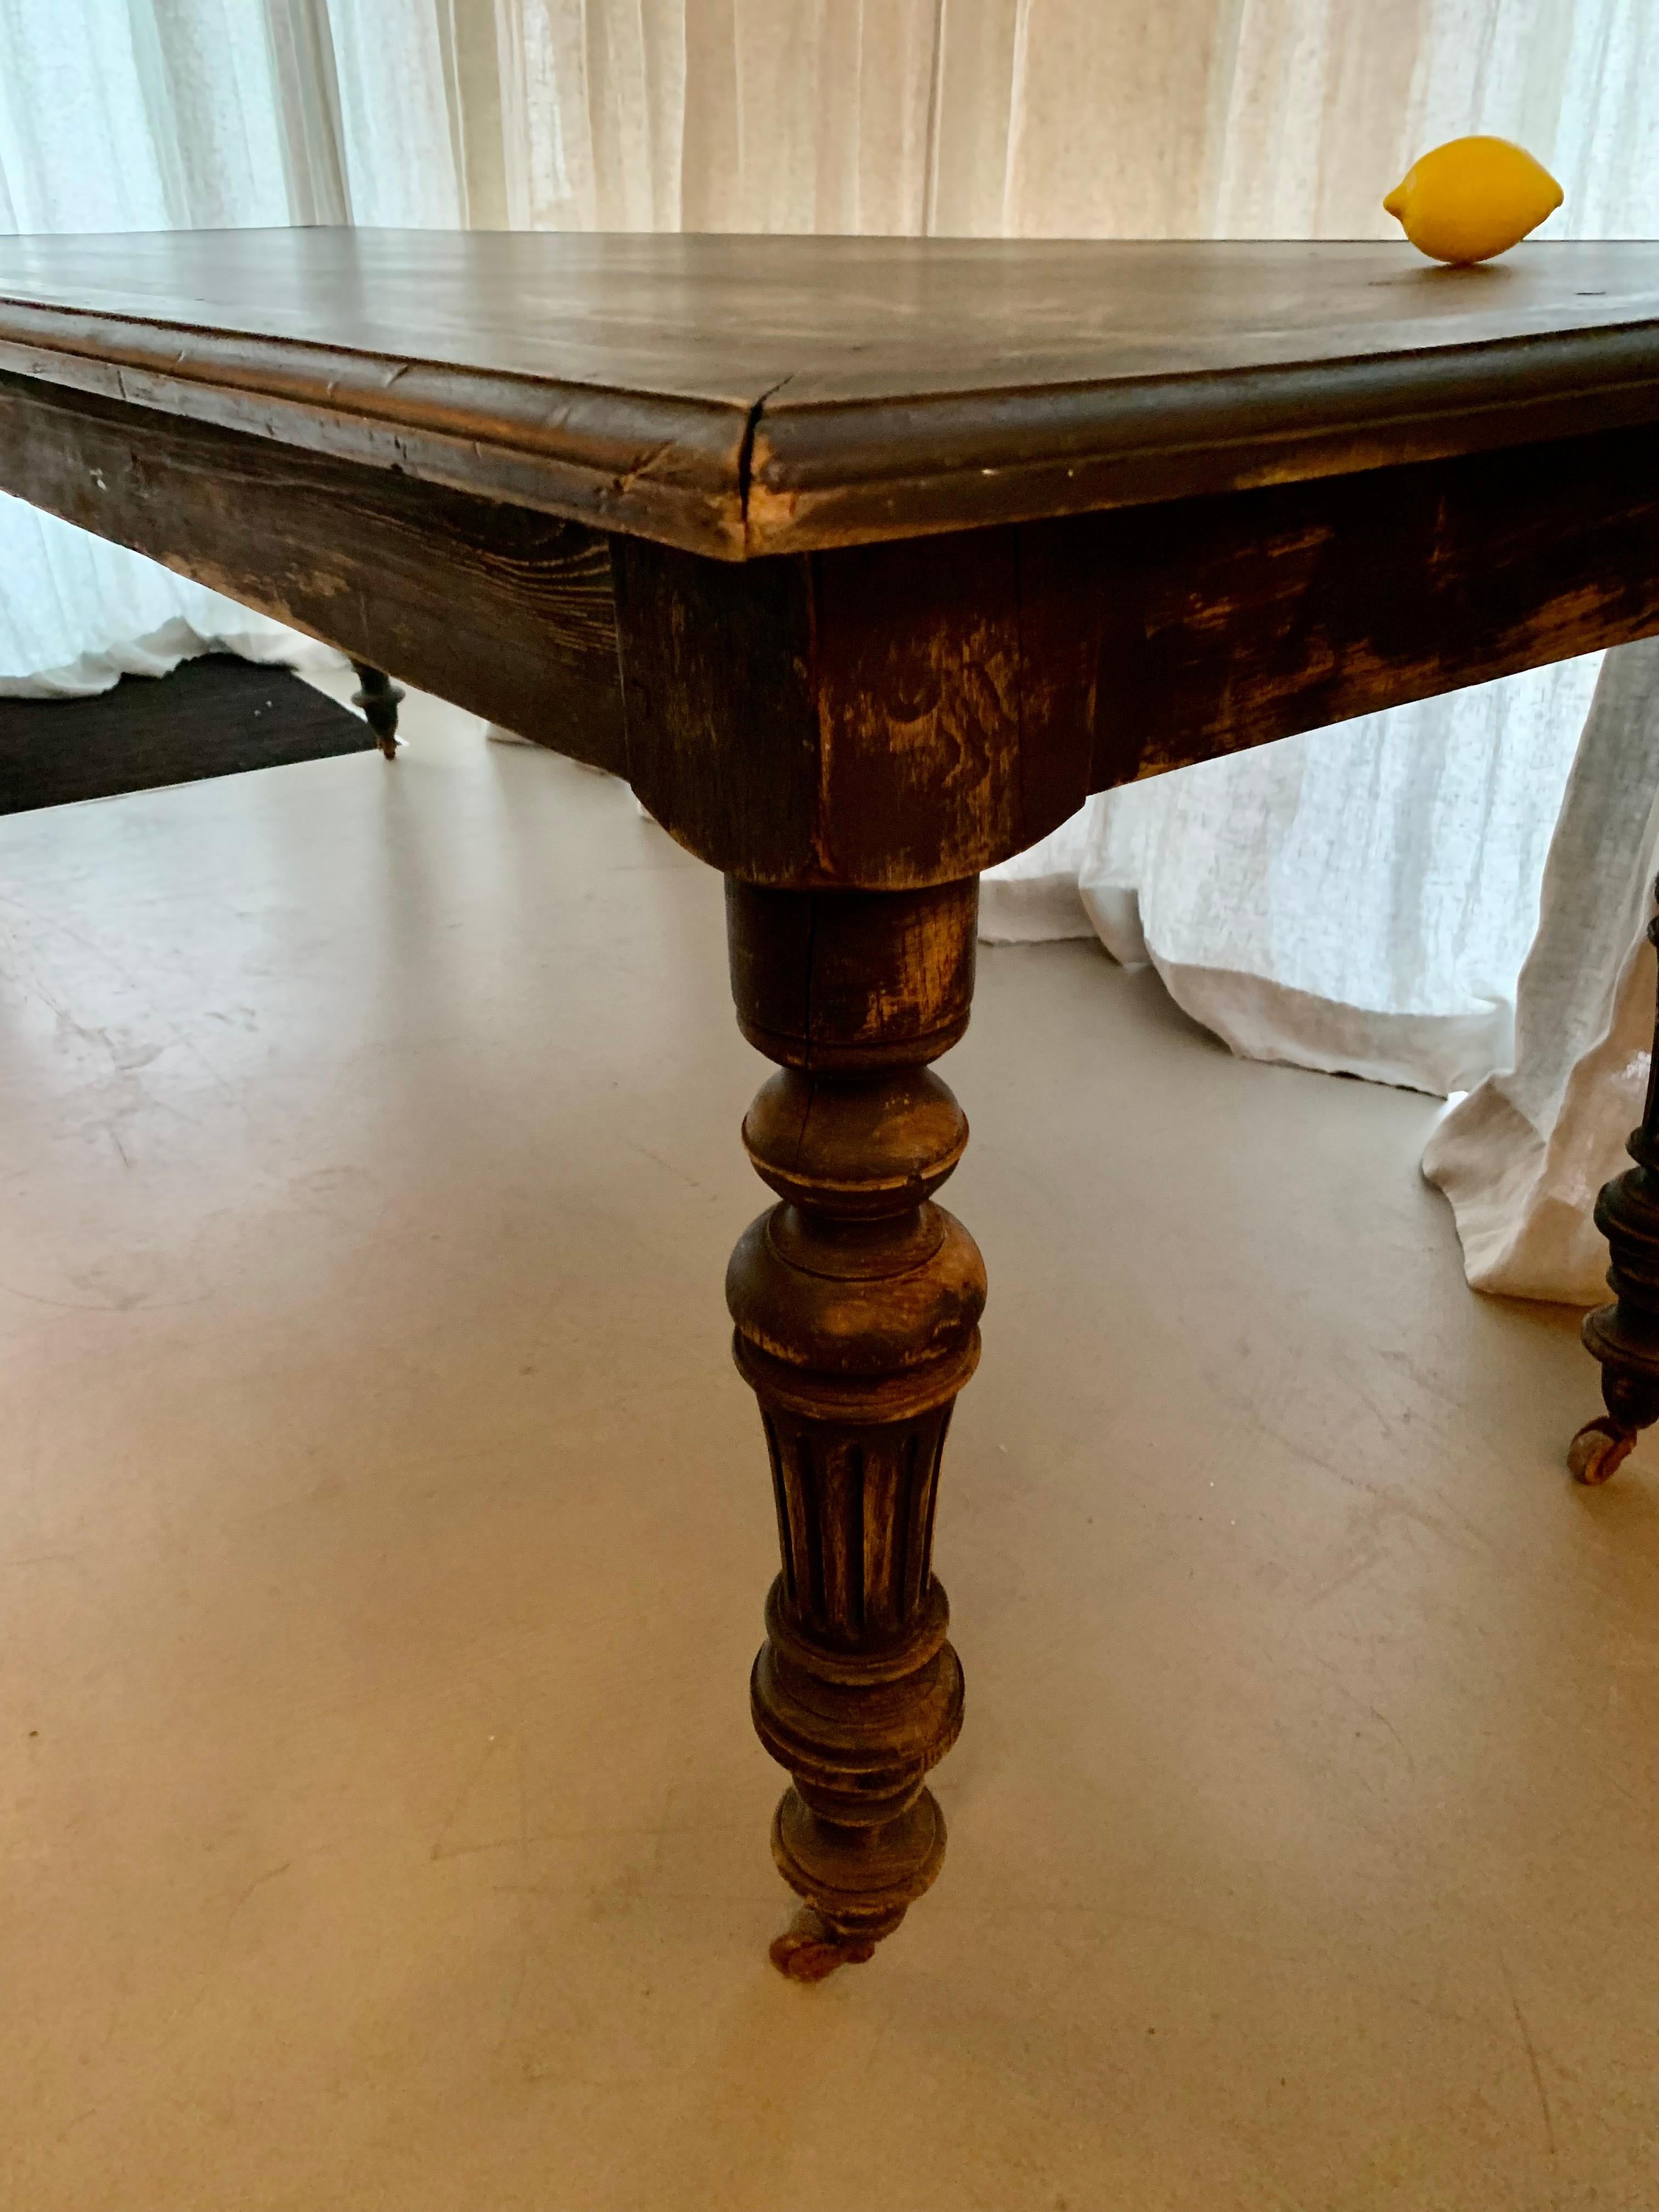 Solide et grande table de salle à manger ancienne française peinte en noir avec une patine magnifique - la table n'est pas lourde, et elle a même des petites roues en pierre ce qui la rend très facile à déplacer.